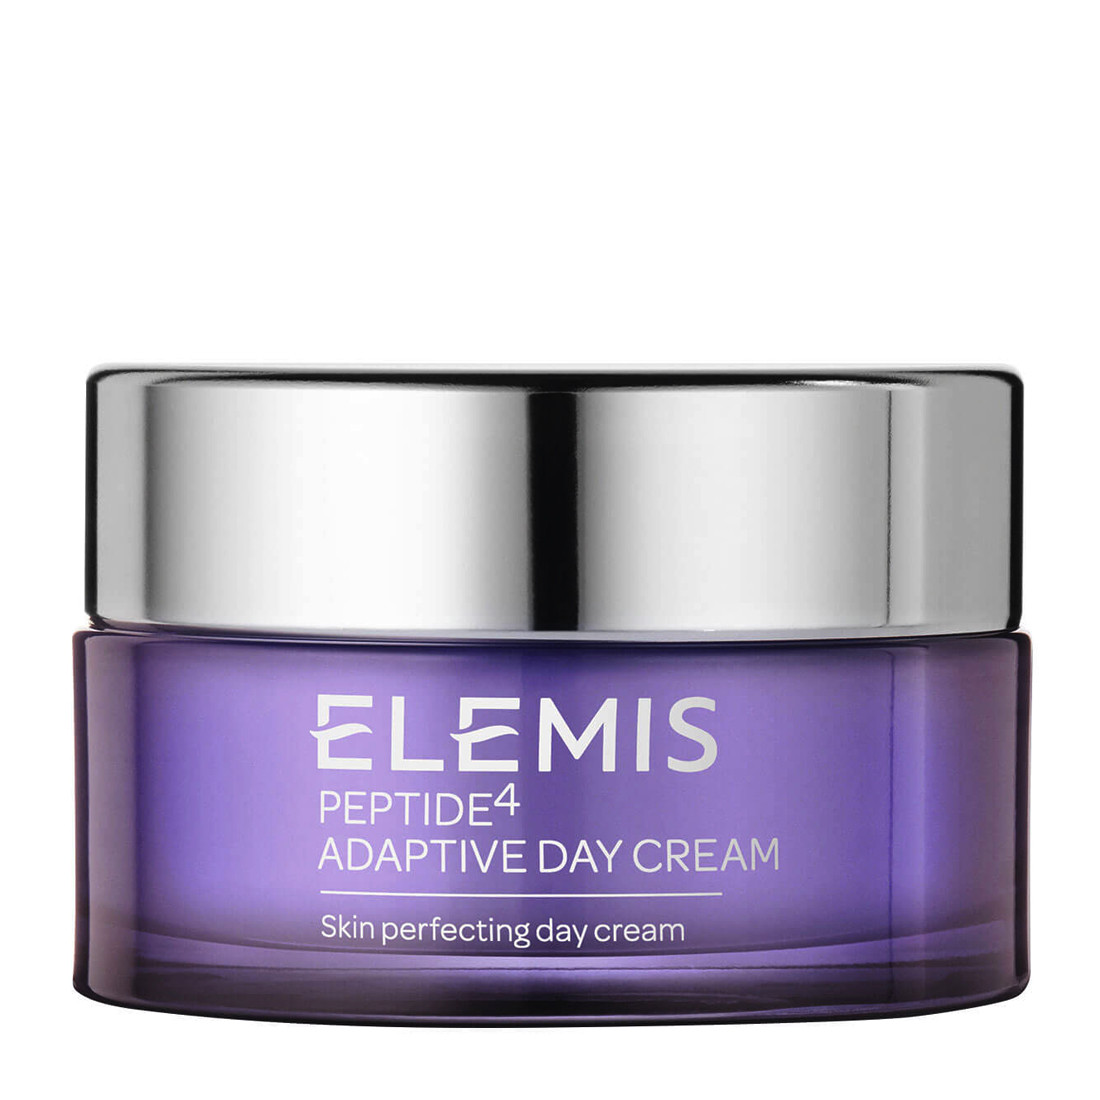 Отзывы о Elelmis Peptide4 Adaptive Day Cream Дневной адаптивный крем